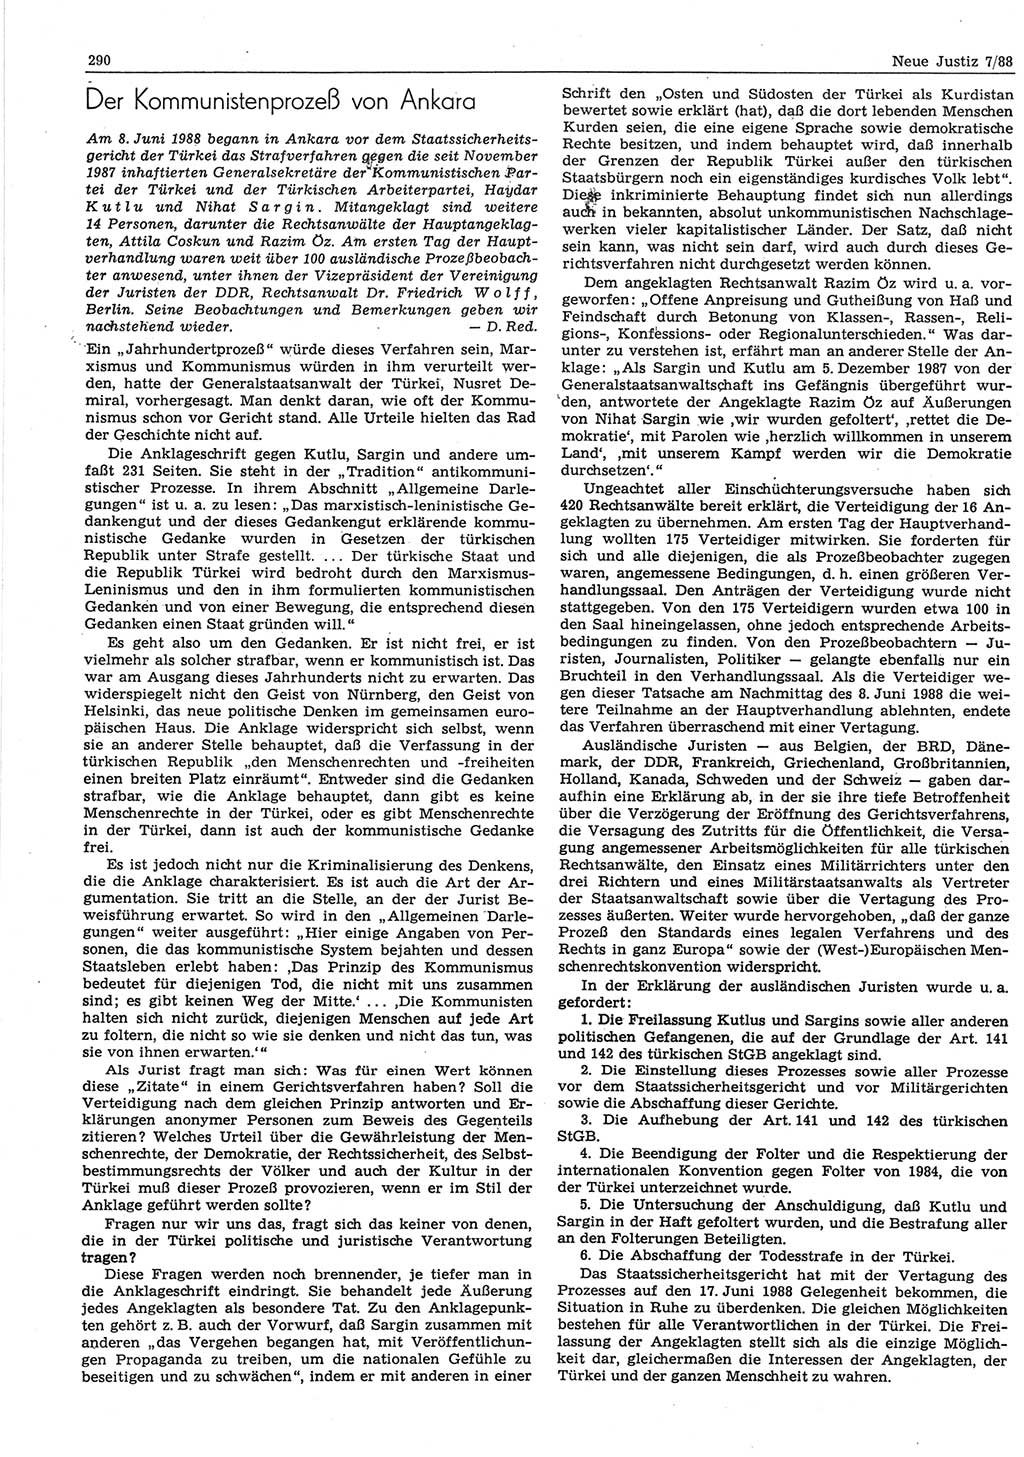 Neue Justiz (NJ), Zeitschrift für sozialistisches Recht und Gesetzlichkeit [Deutsche Demokratische Republik (DDR)], 42. Jahrgang 1988, Seite 290 (NJ DDR 1988, S. 290)